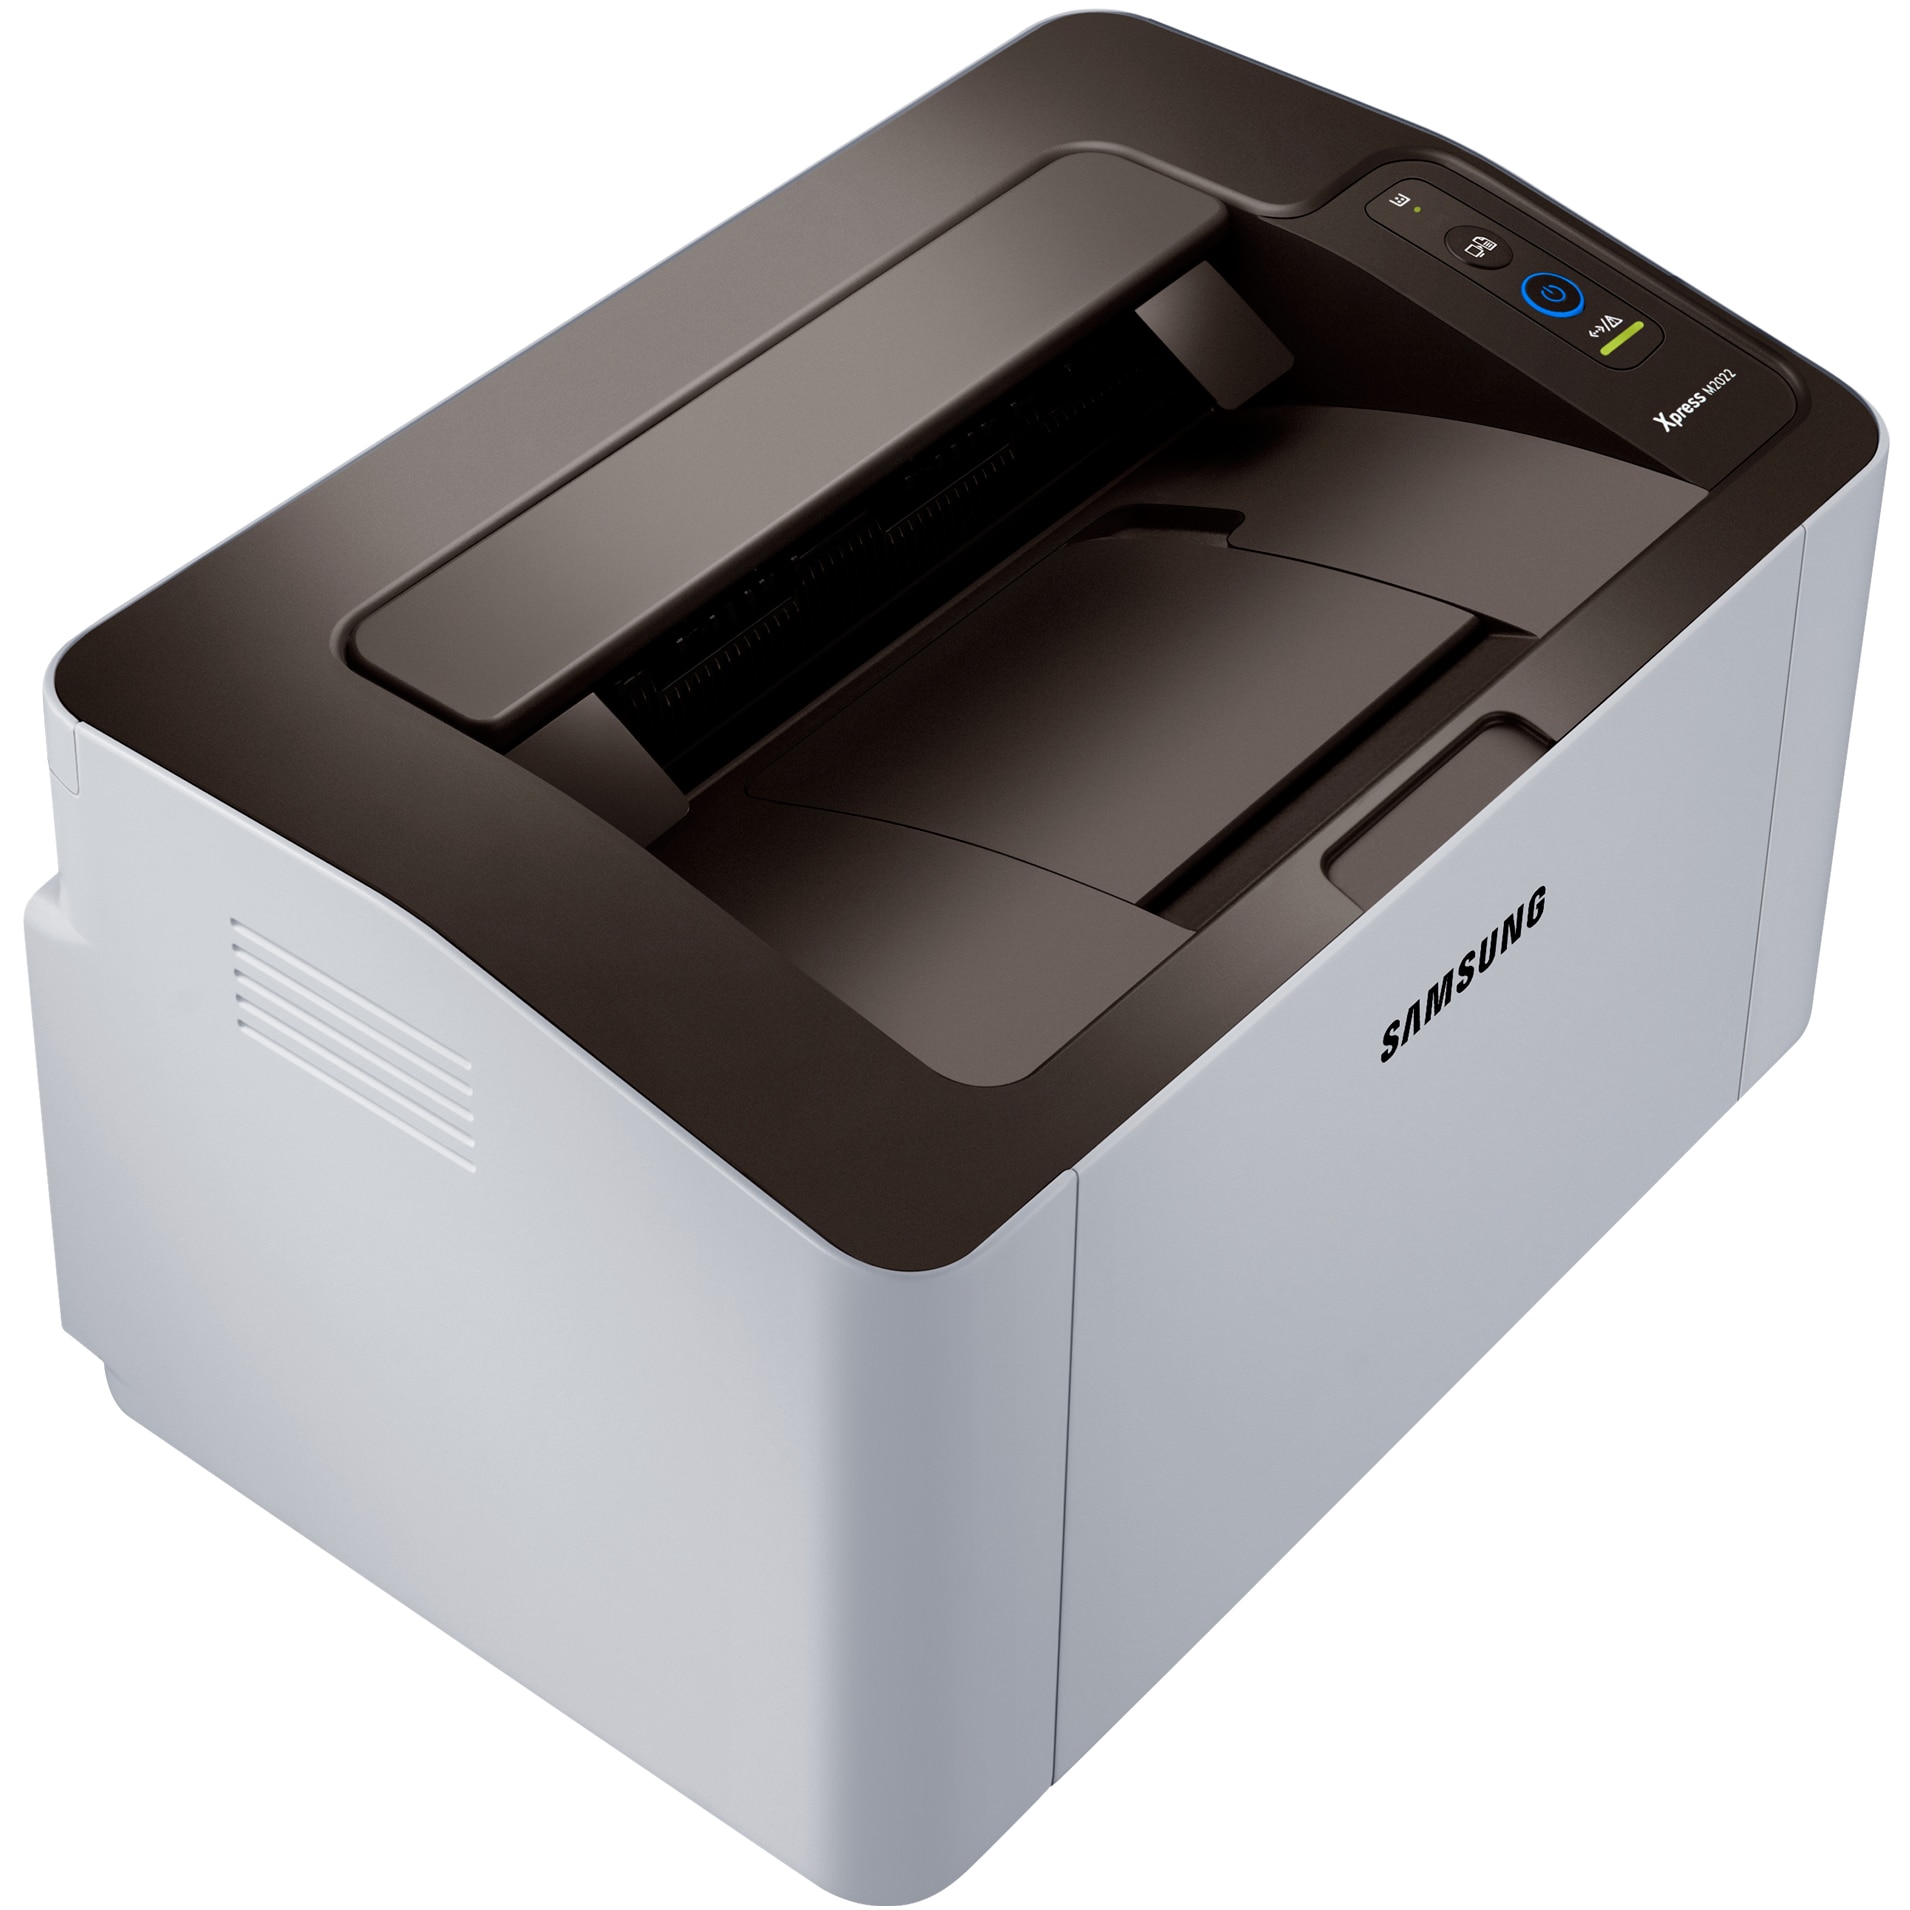 Лазерный принтер м. Принтер Samsung Xpress m2020. Принтер Samsung SL-m2020. Лазерный принтер Samsung Xpress m2020. Принтеров Samsung Xpress SL-m2020.